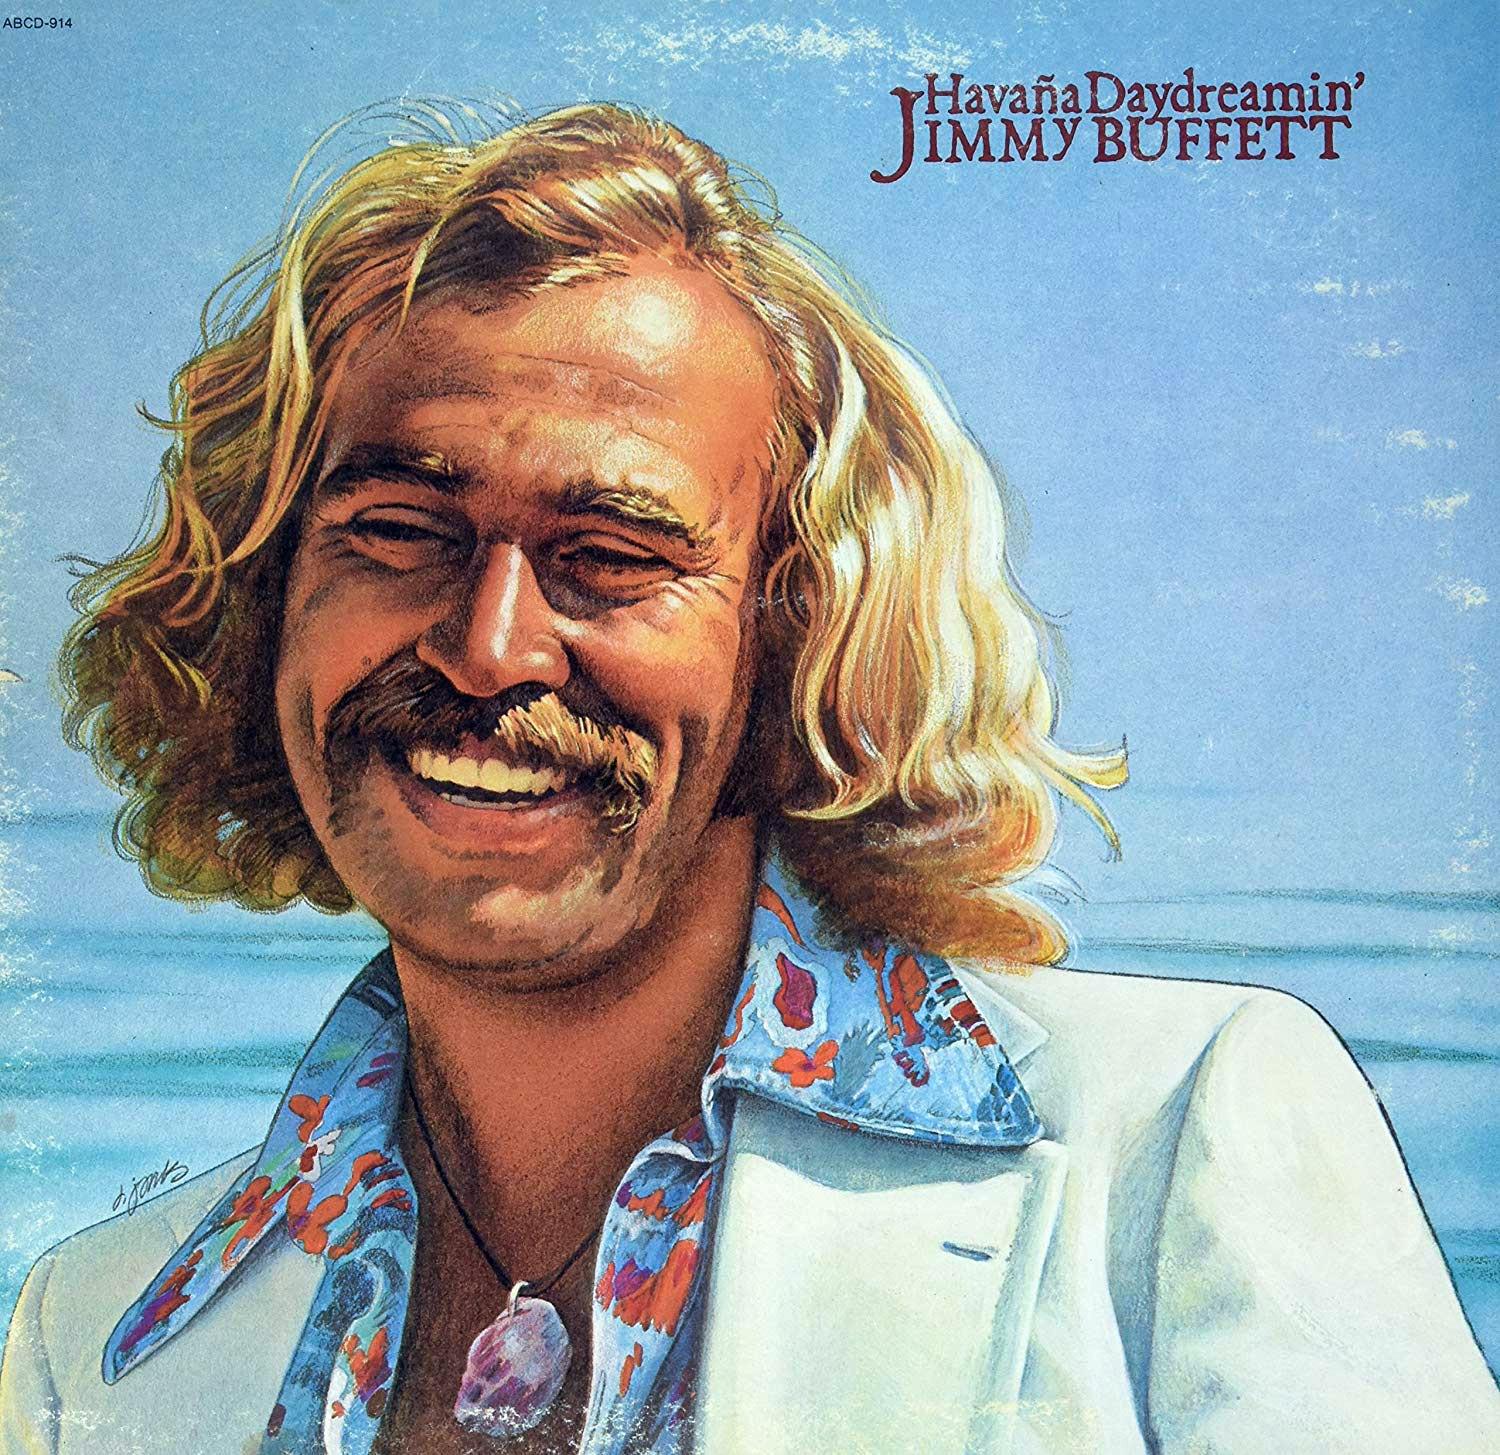 Jimmy Buffett - 1976 (Album Cover).jpg